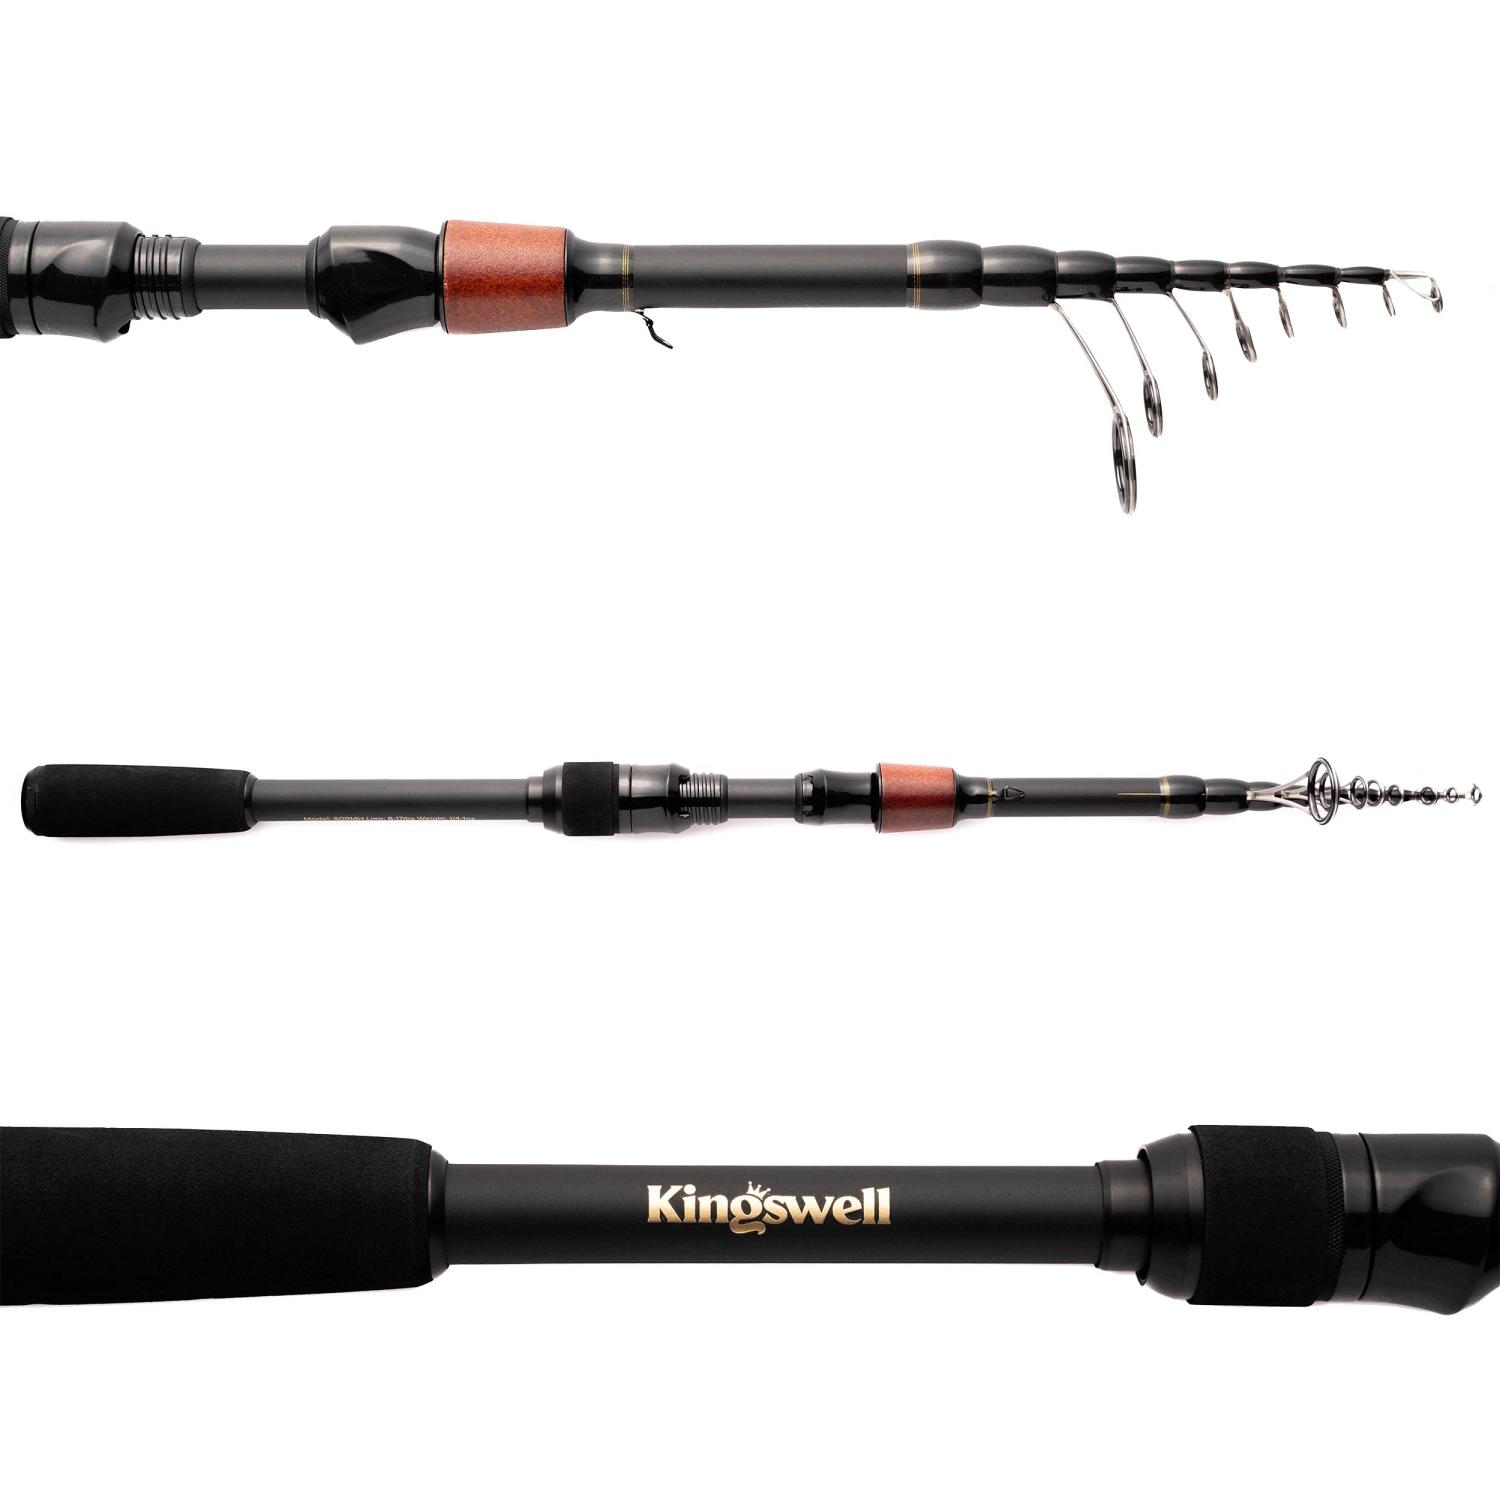 Carbon Fishing Rod 6'.8” Fishing Rod Carbon Fiber Telescopic